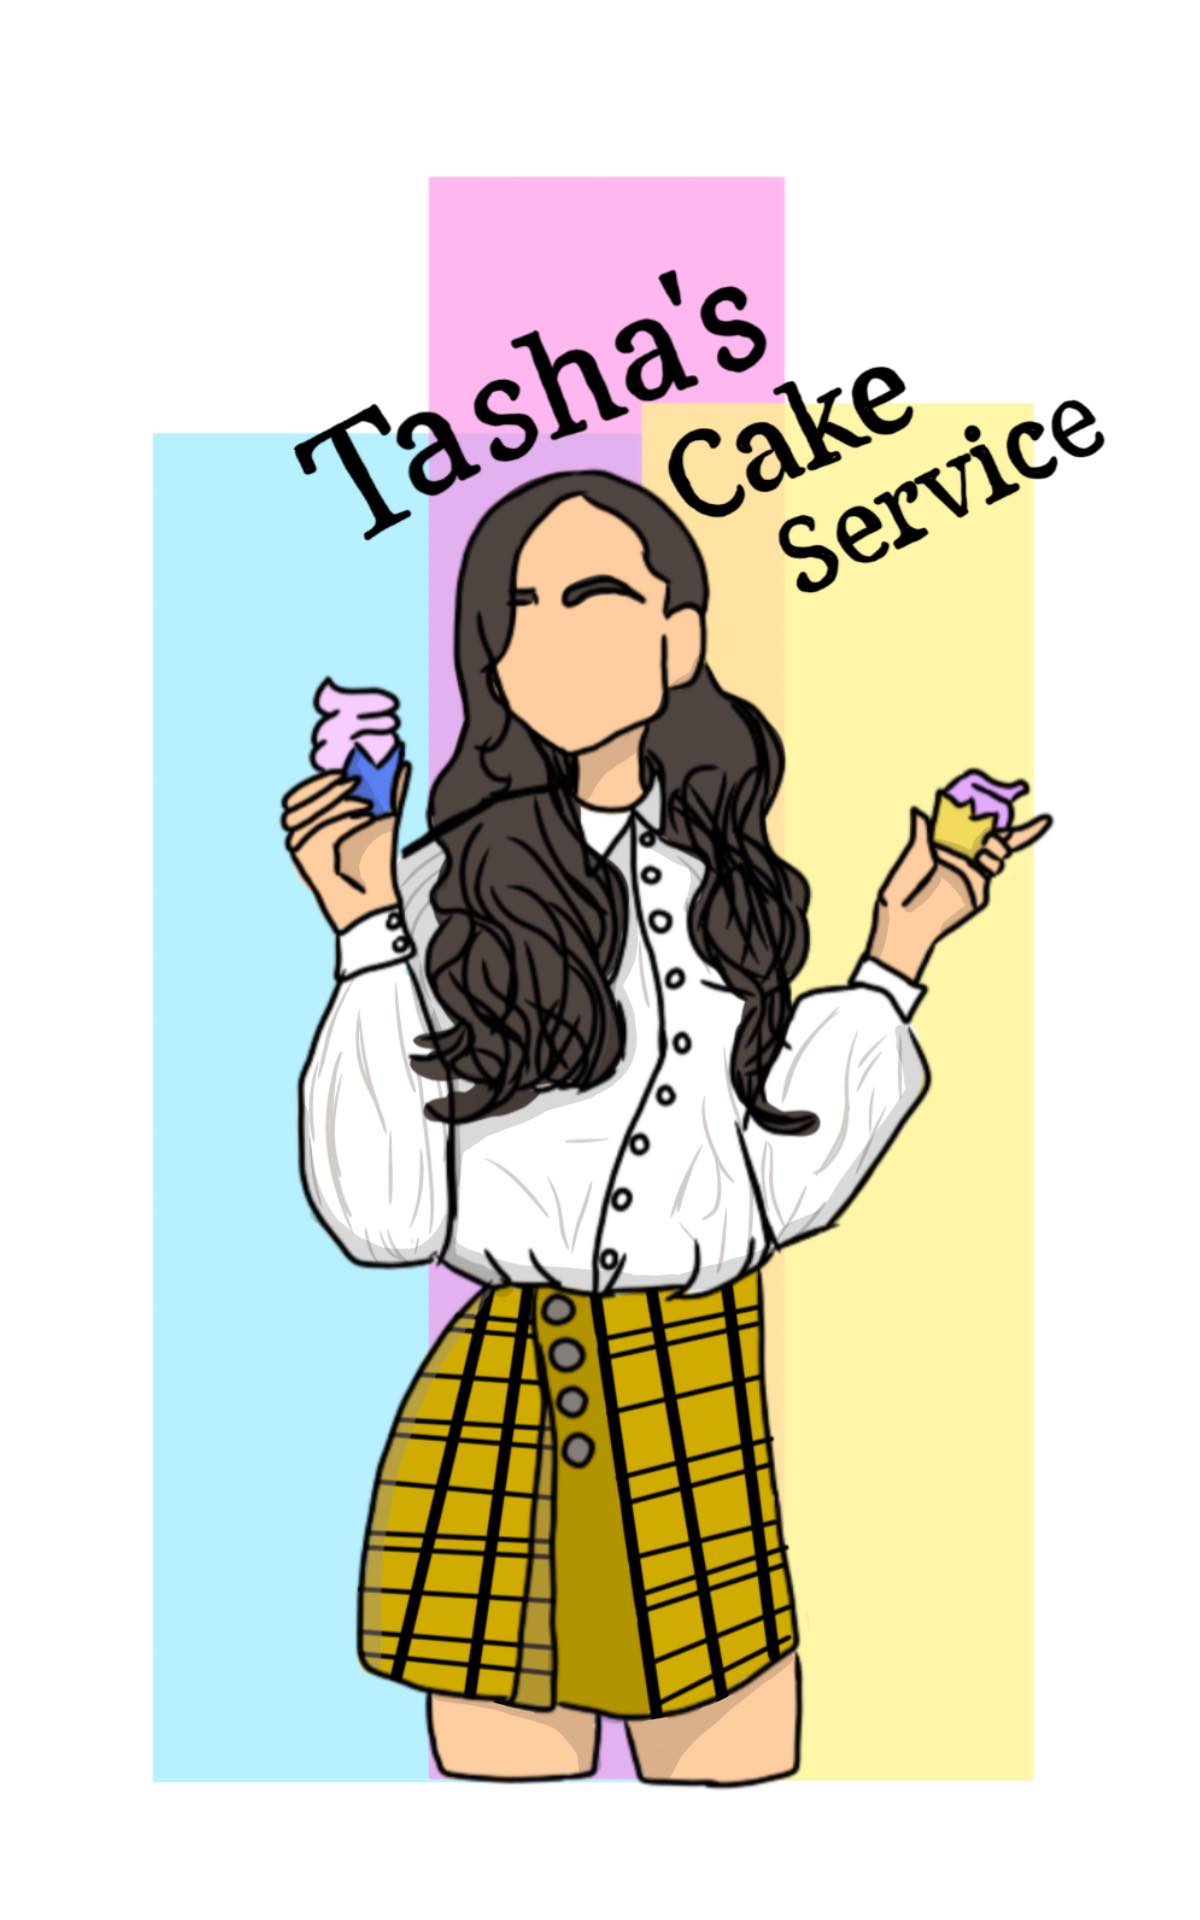 Tasha's Cake Service